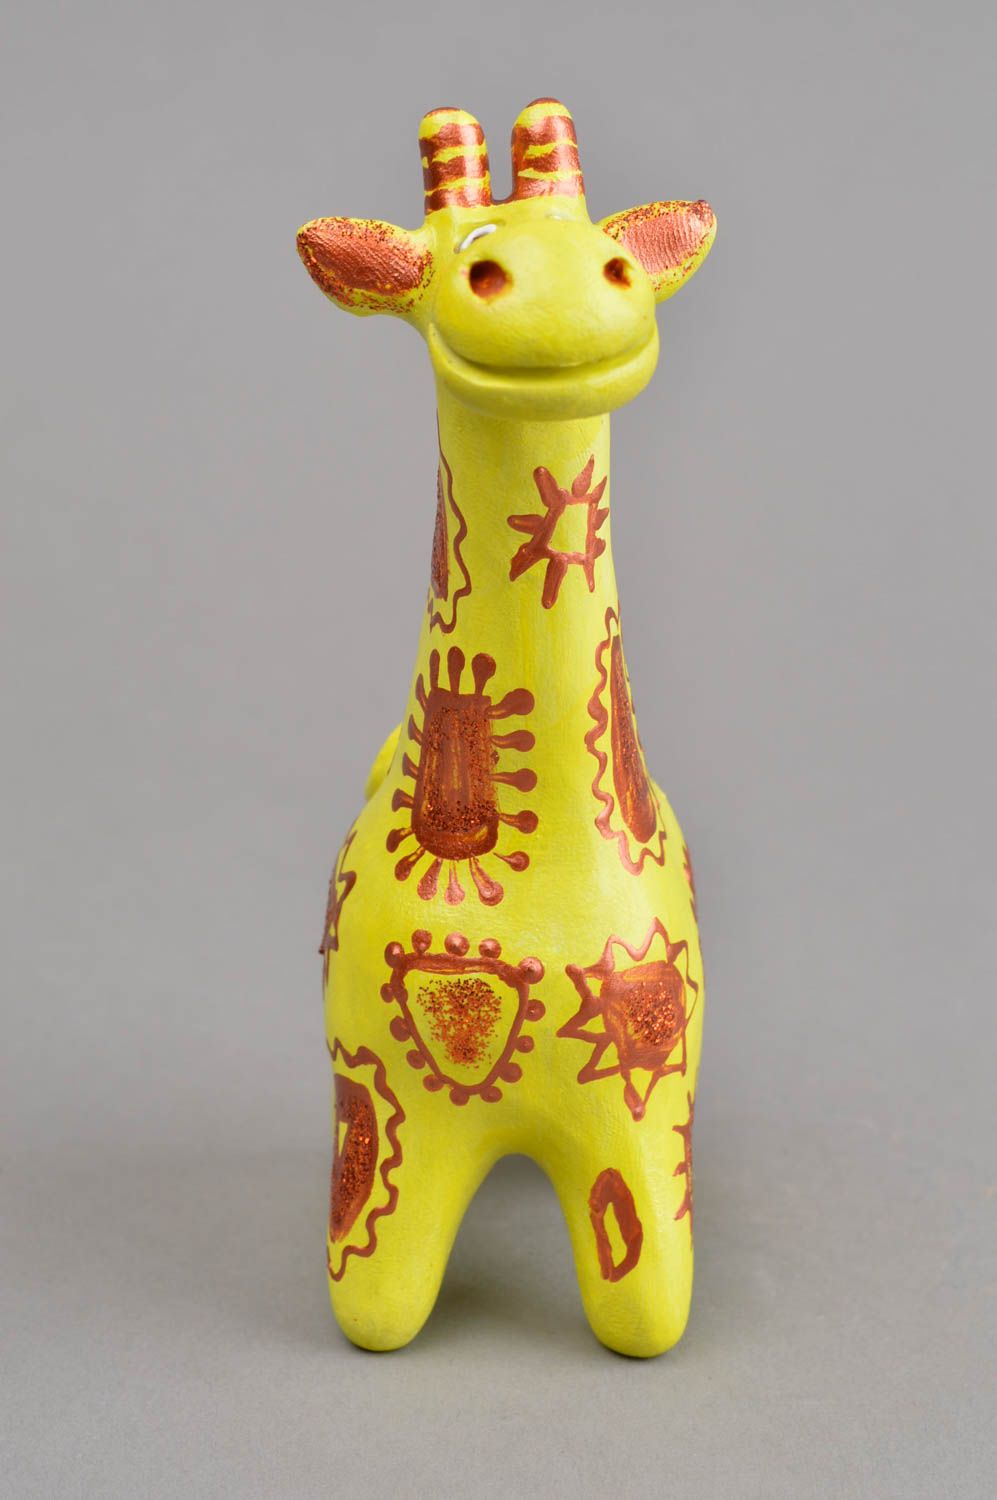 Handmade Lernspielzeug für Kind Keramik Figur Giraffe Musikinstrument für Kind foto 2